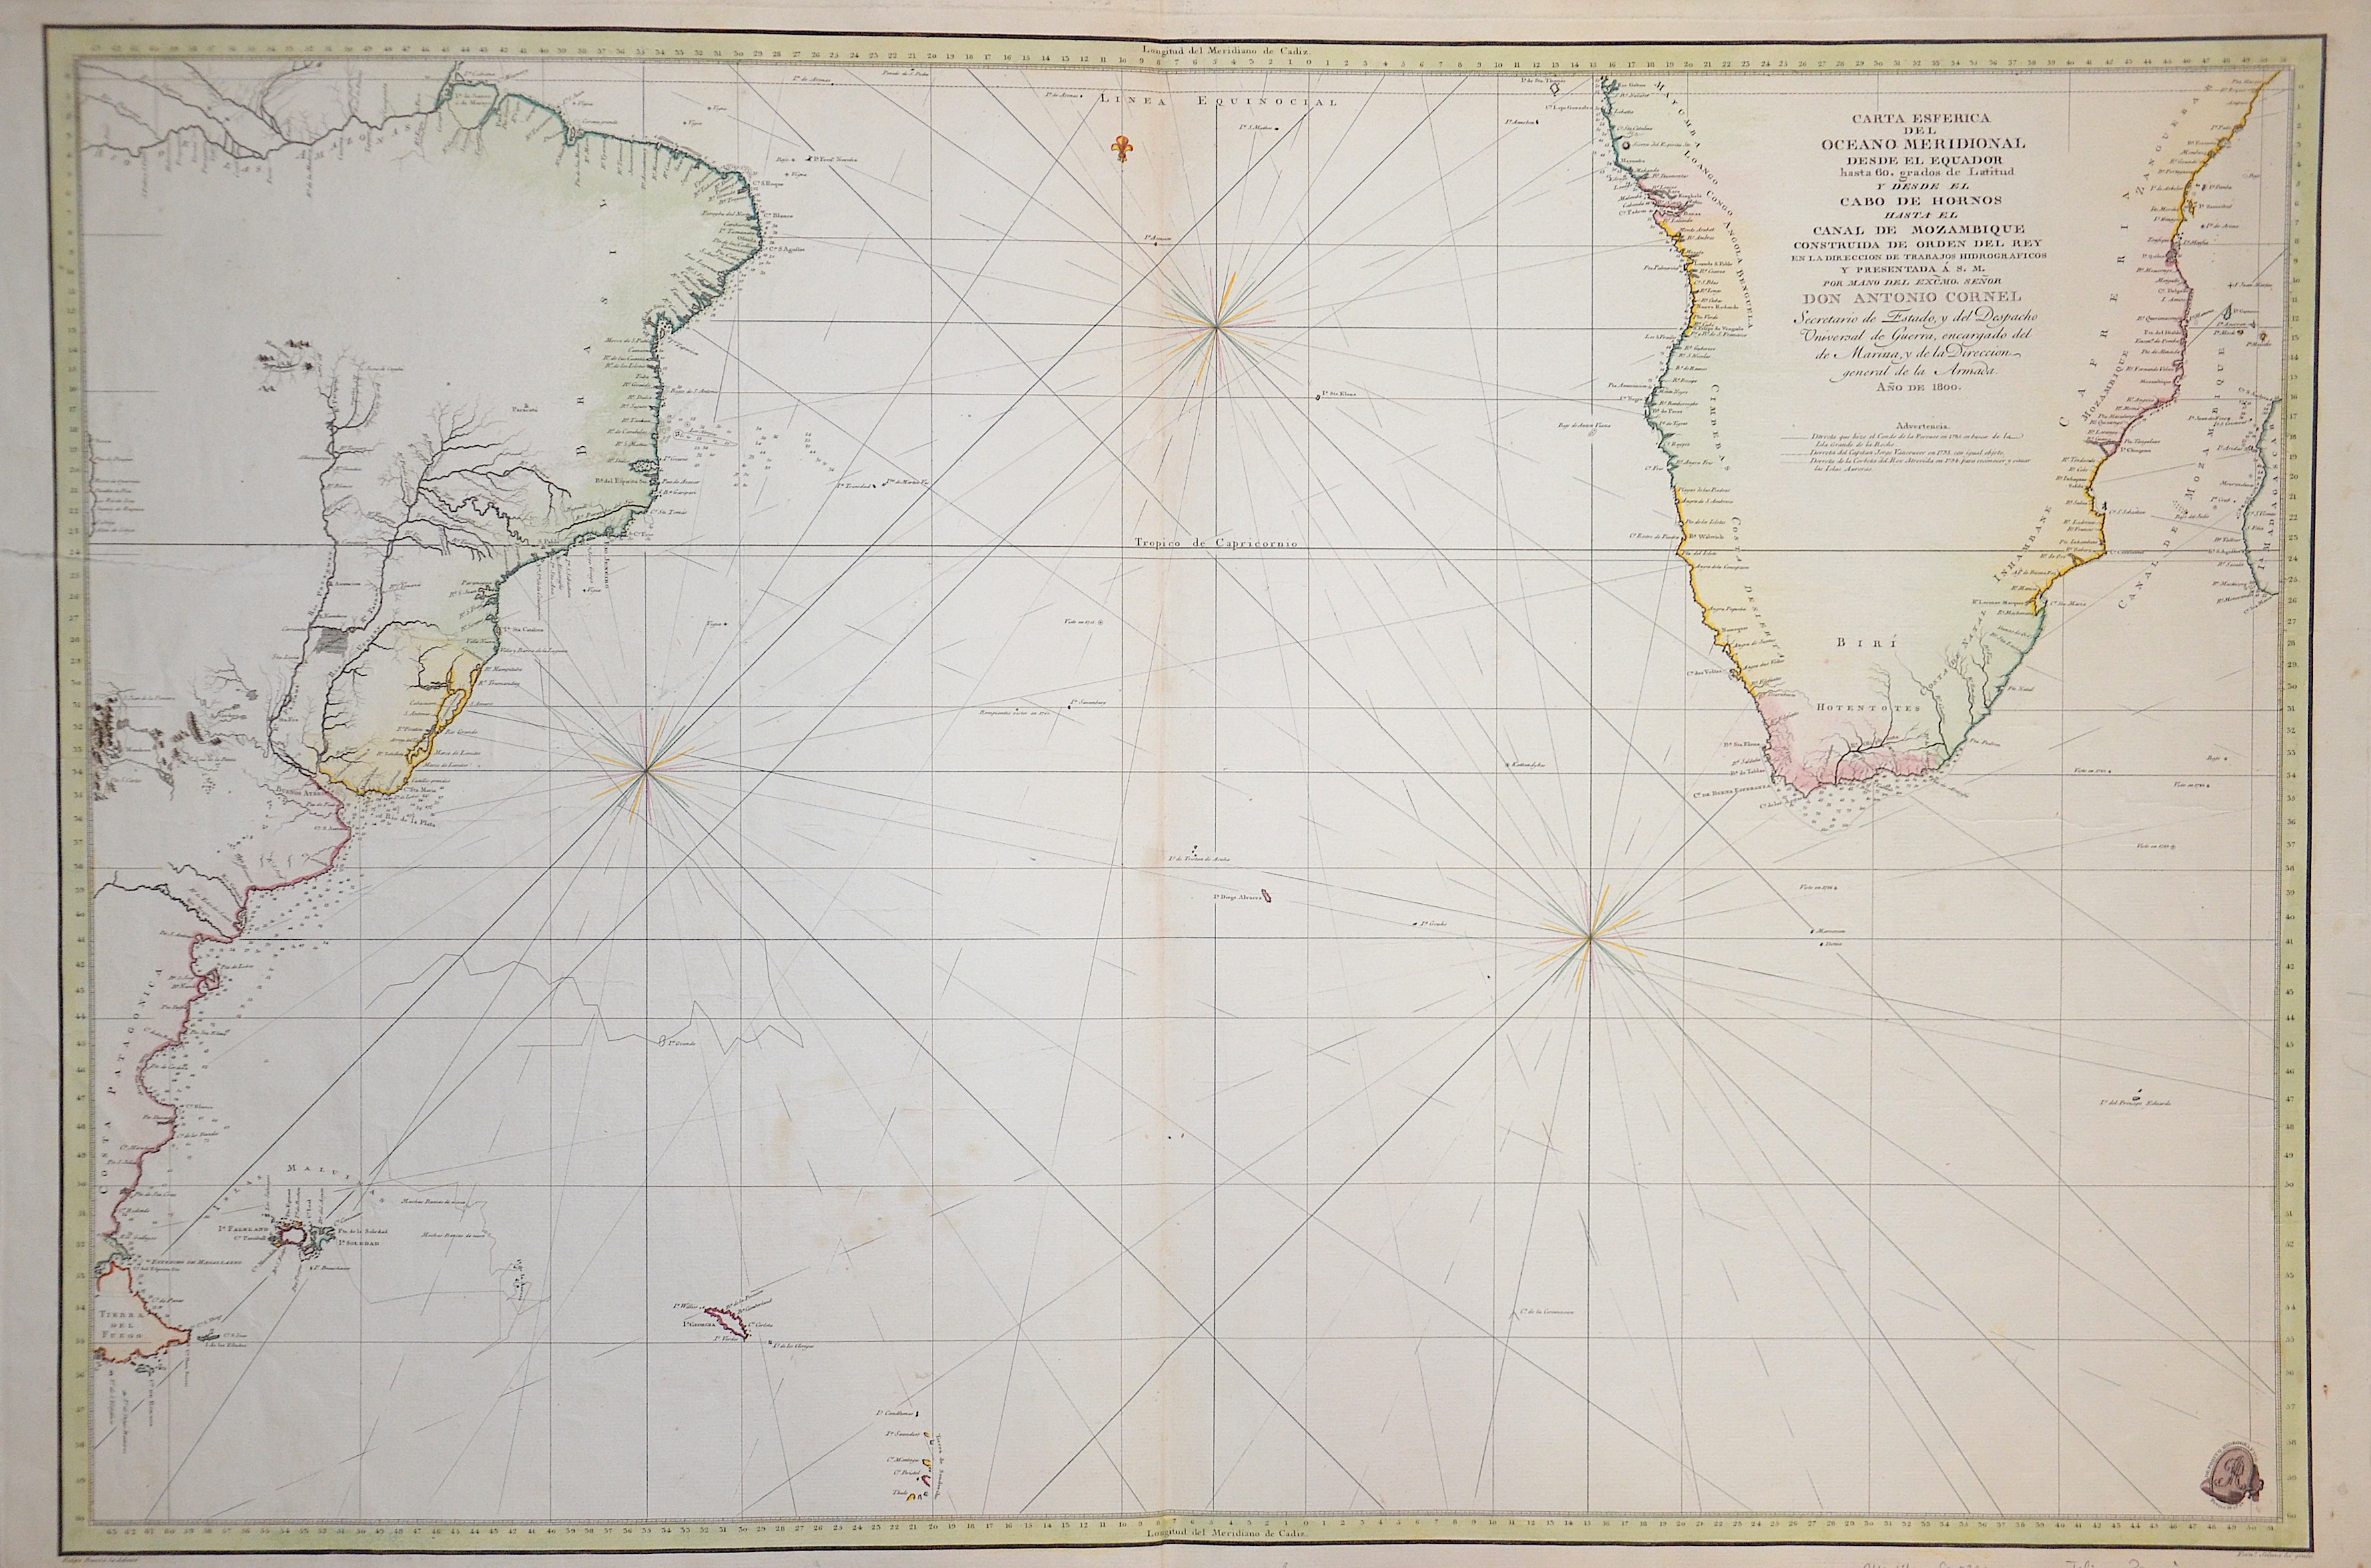 Bauza  Carta Esferica del Oceeano Meridional desde el Eyuador…Cabo de Hornos… Canal de Mozambique…